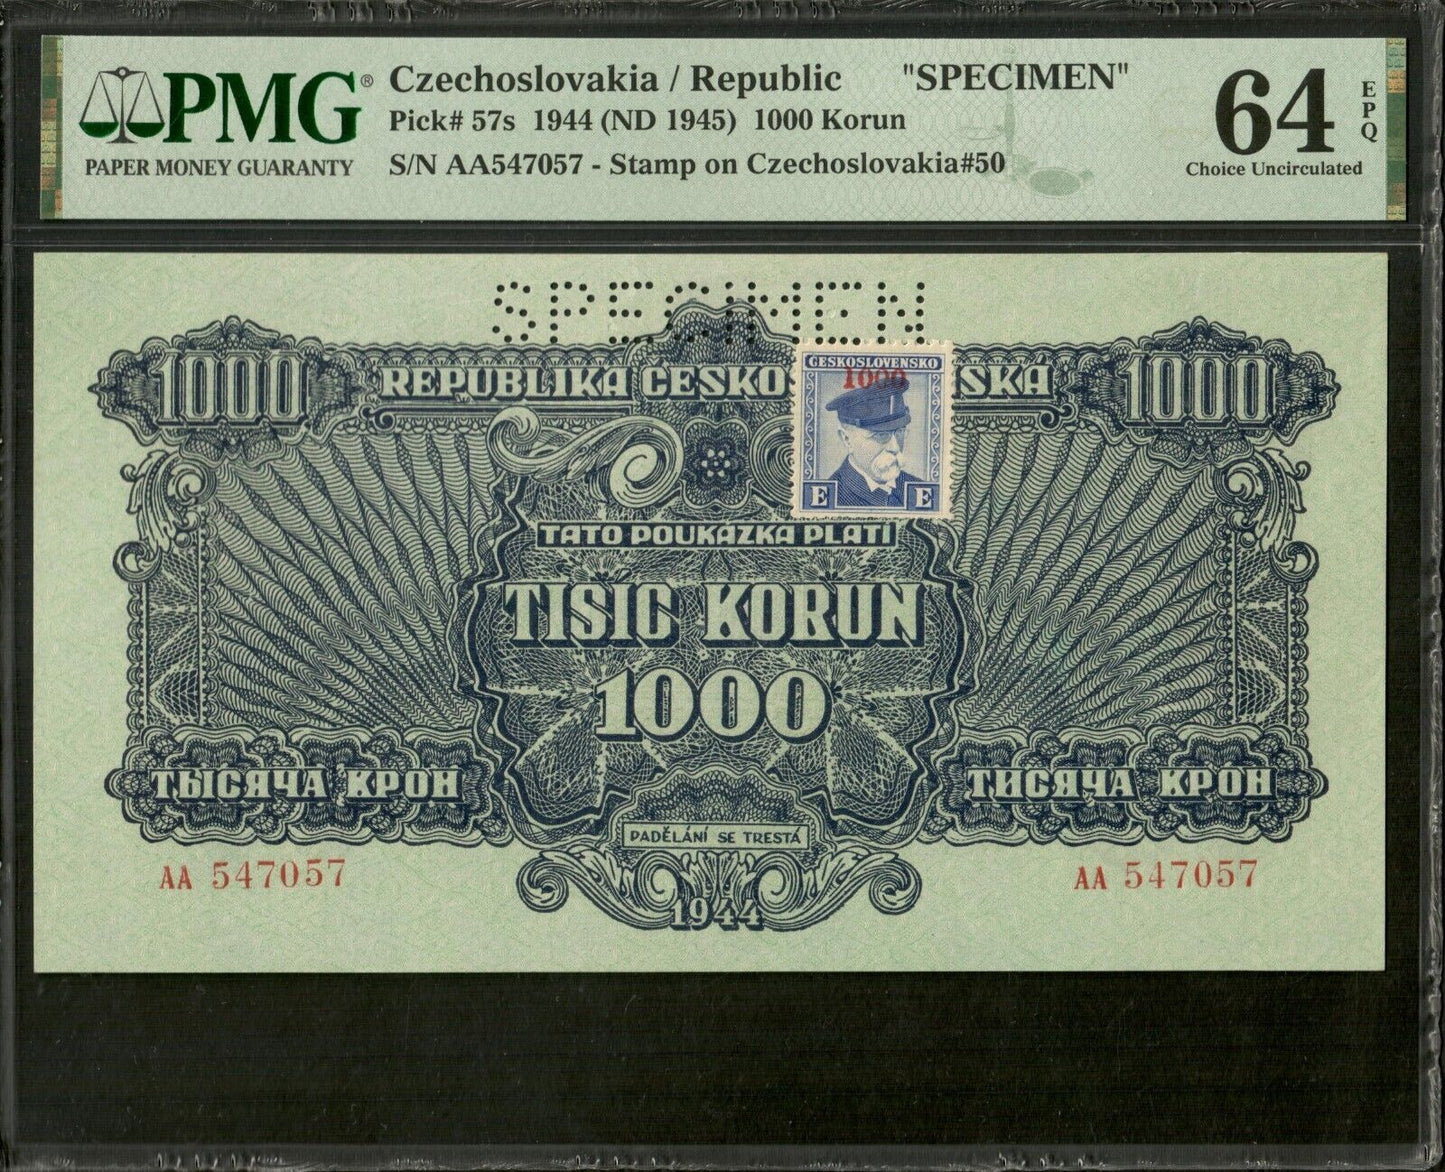 CZECHOSLOVAKIA - 1000 Korun Specimen 1944 P.57s NEUF / PMG Choice Unc 64 EPQ